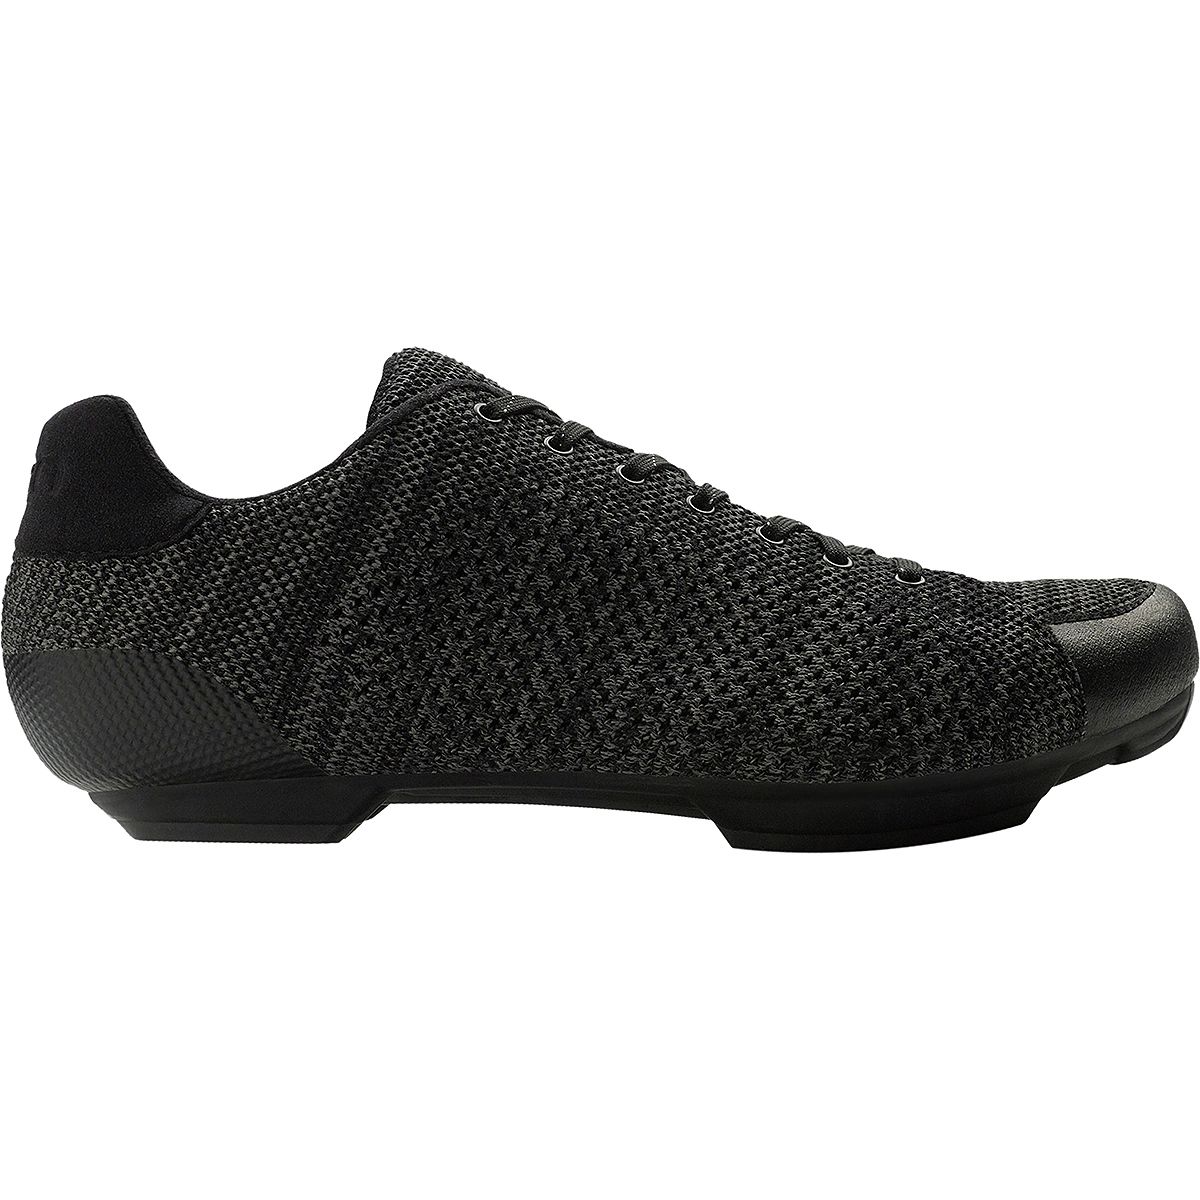 Giro Republic R Knit Cycling Shoe - Men's Black/Charcoal Heather, 39.0